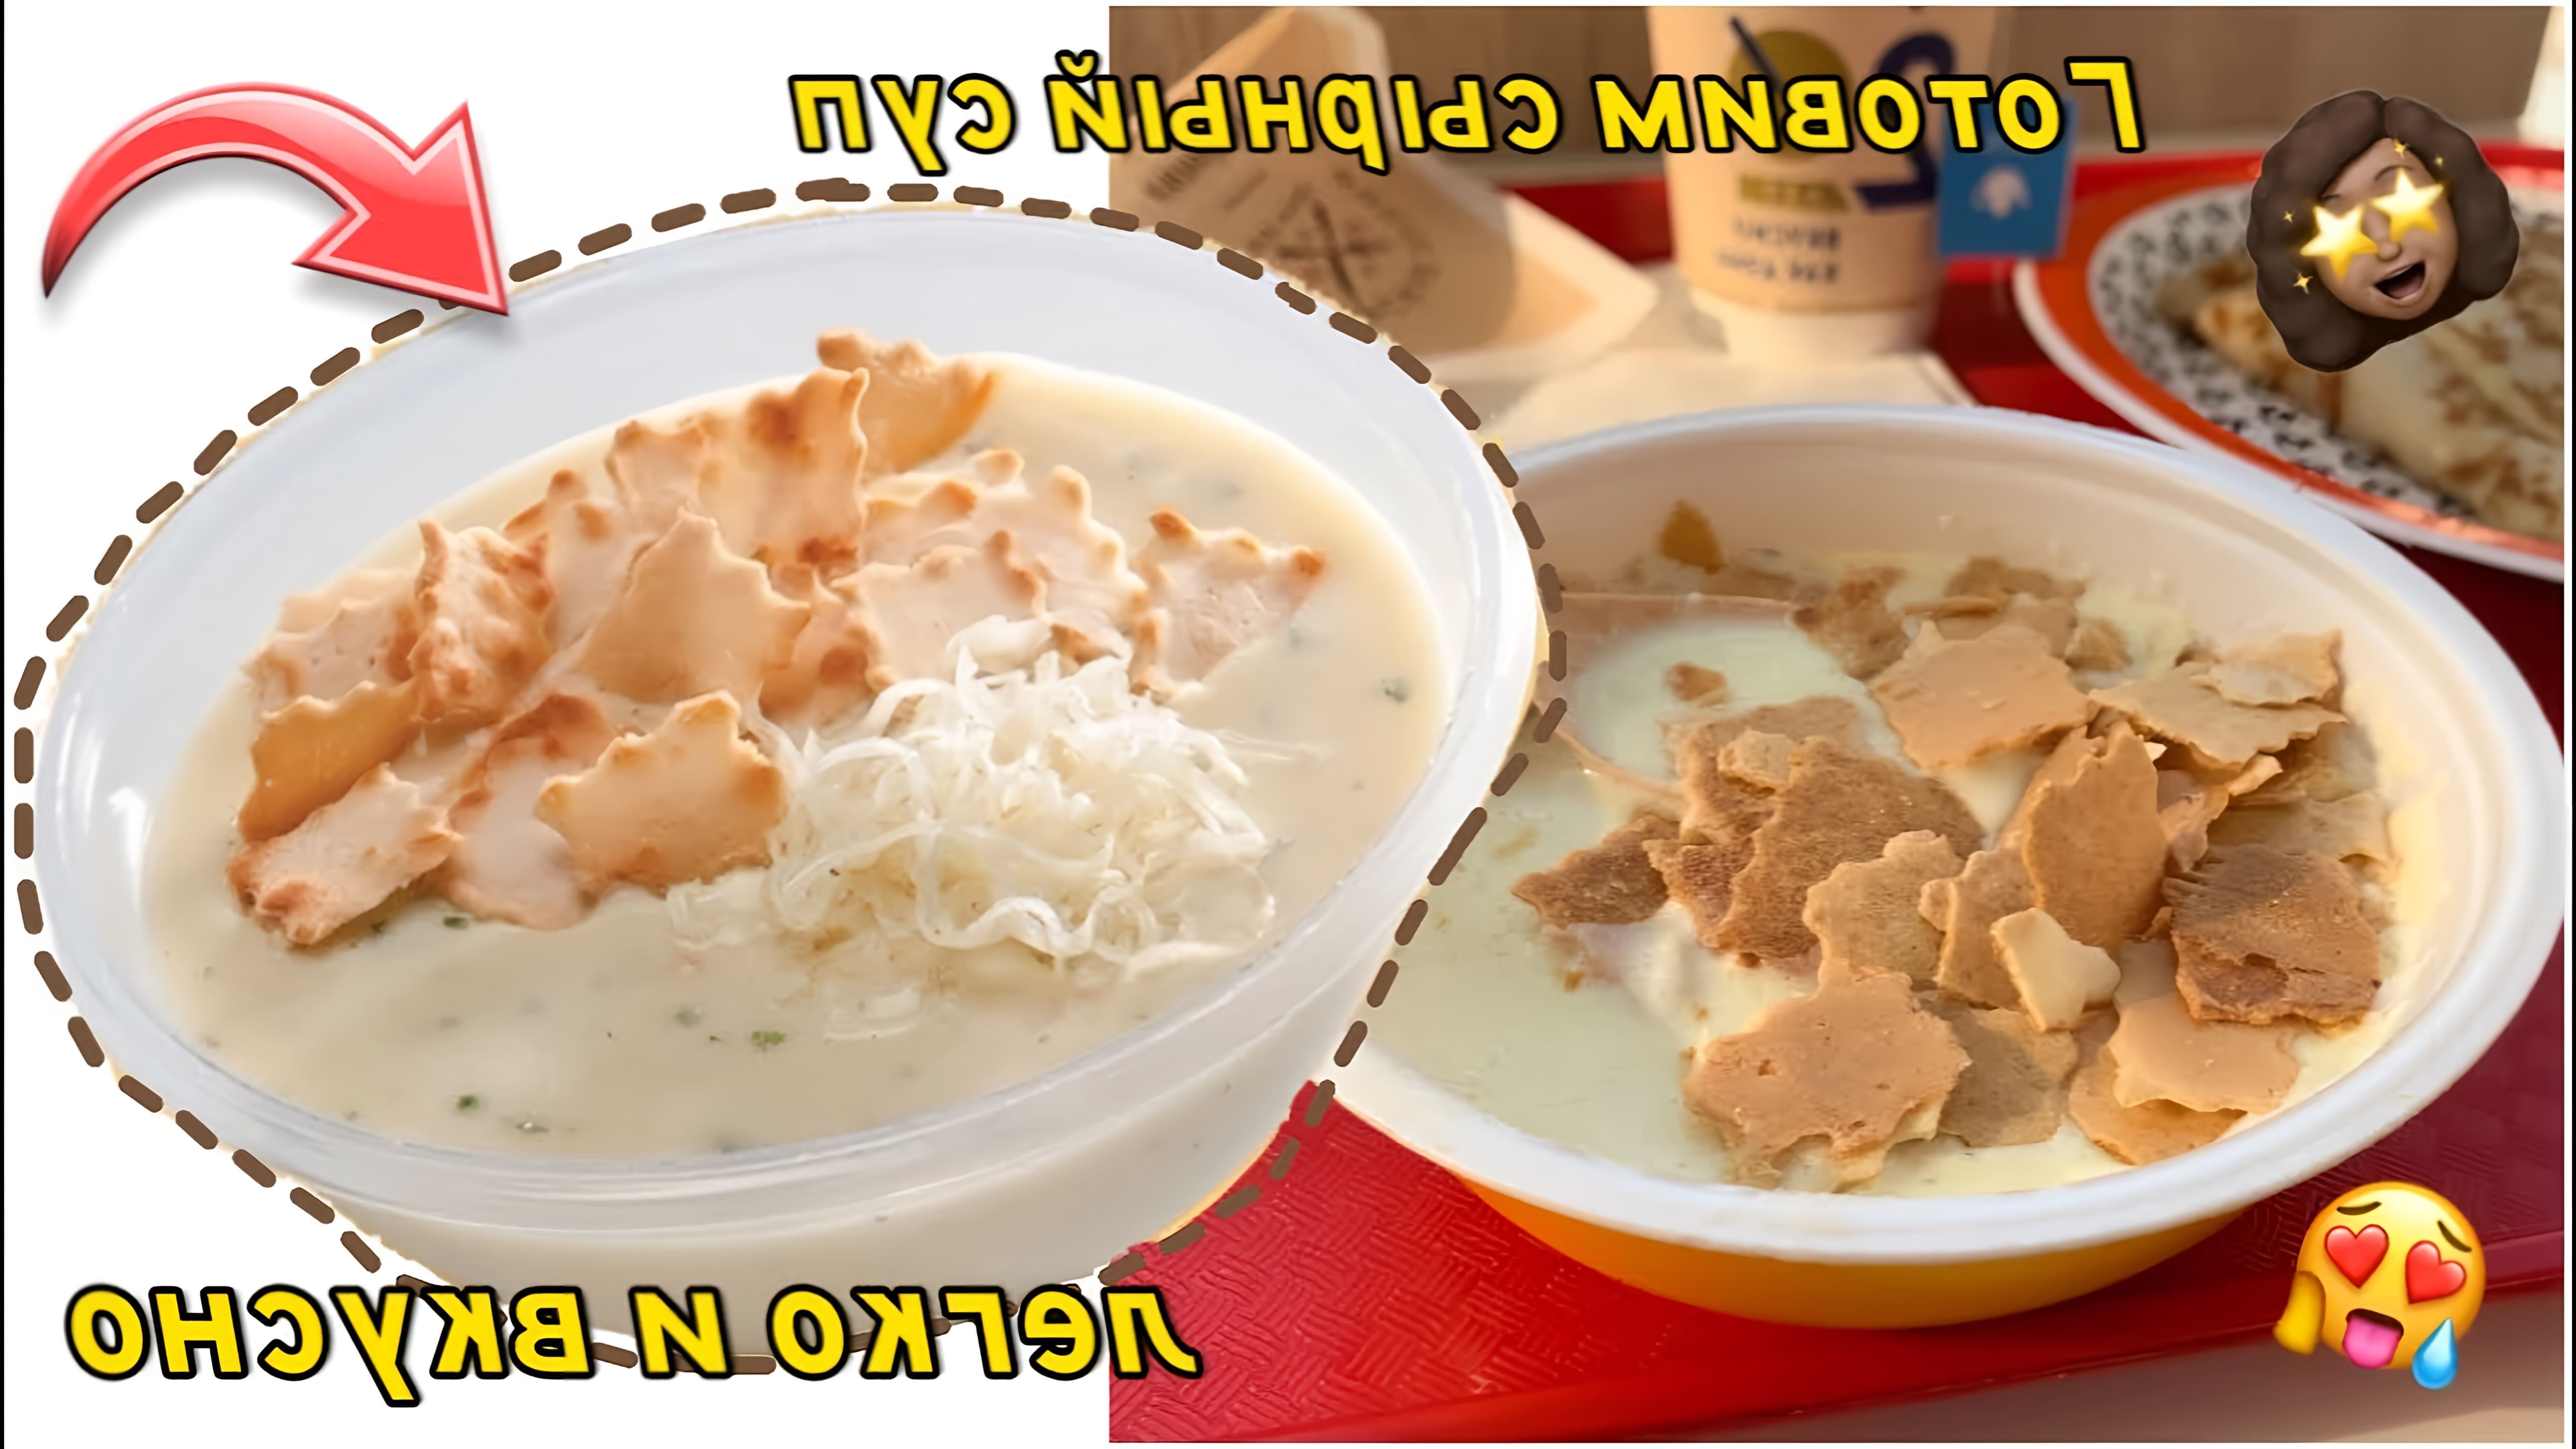 В данном видео демонстрируется рецепт приготовления сырного супа как в теремке